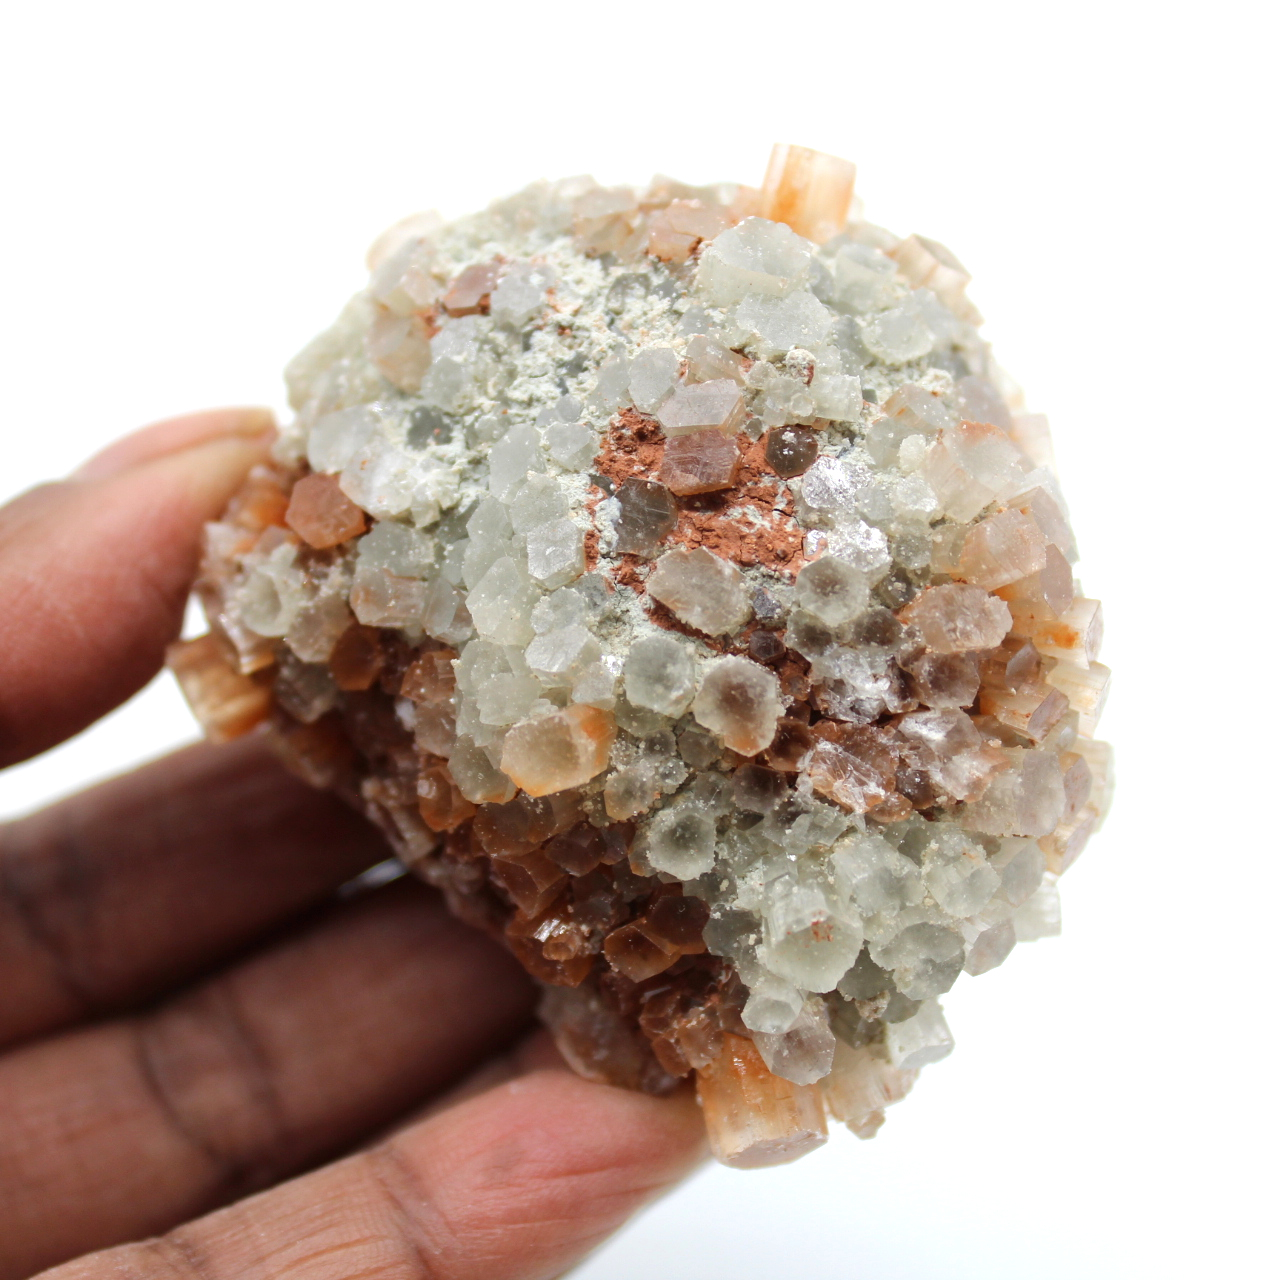 Aragonite crystals